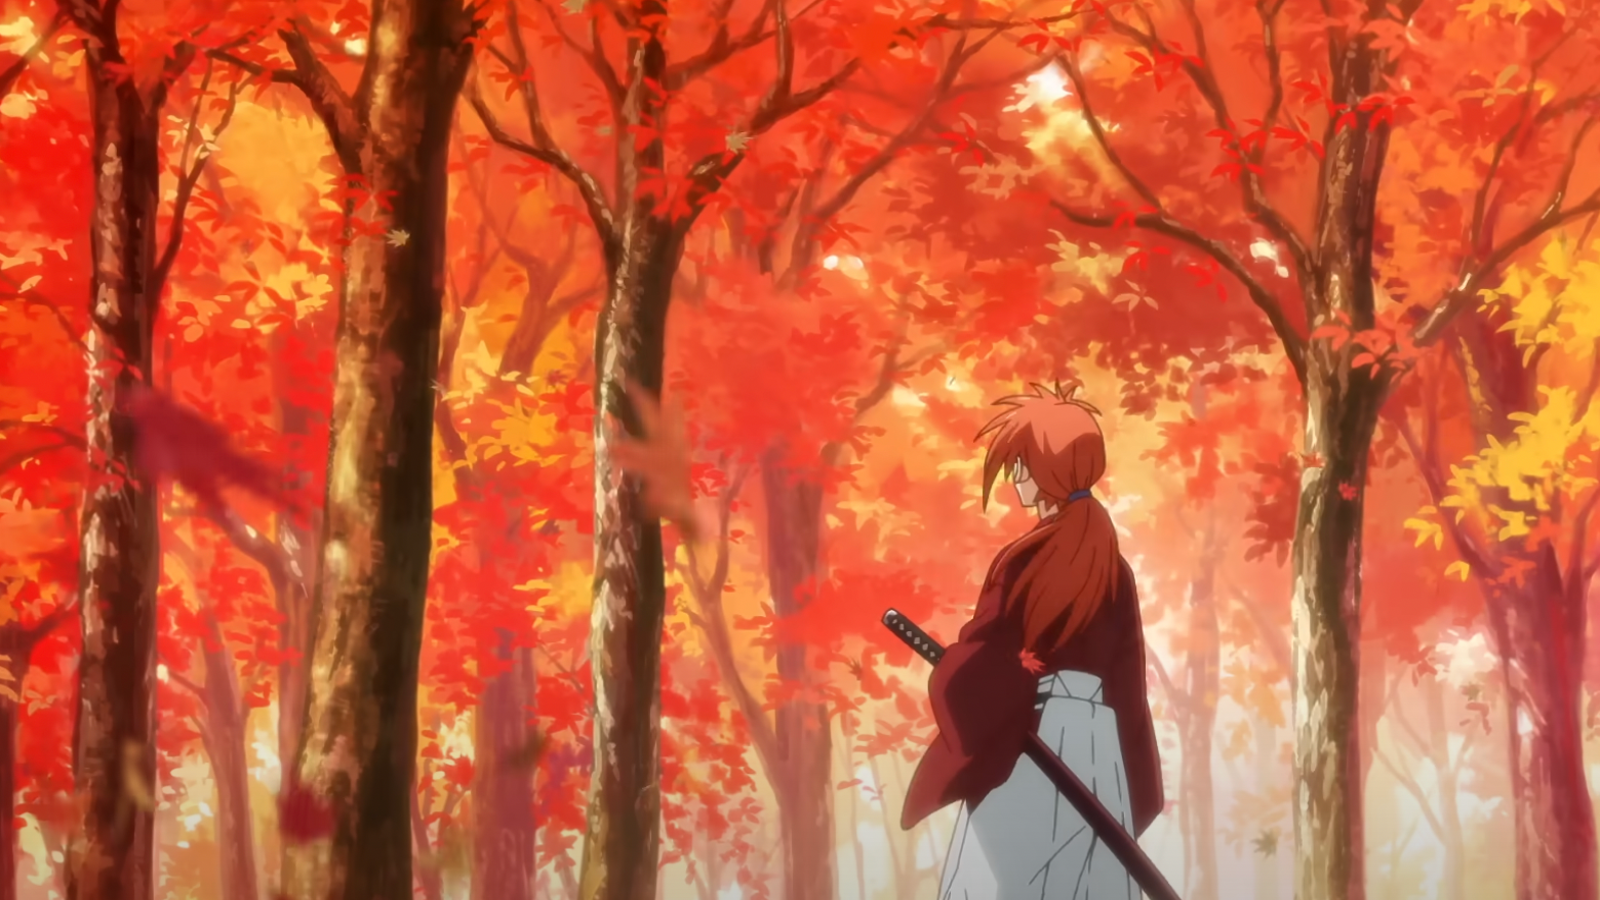 Rurouni Kenshin em português europeu - Crunchyroll